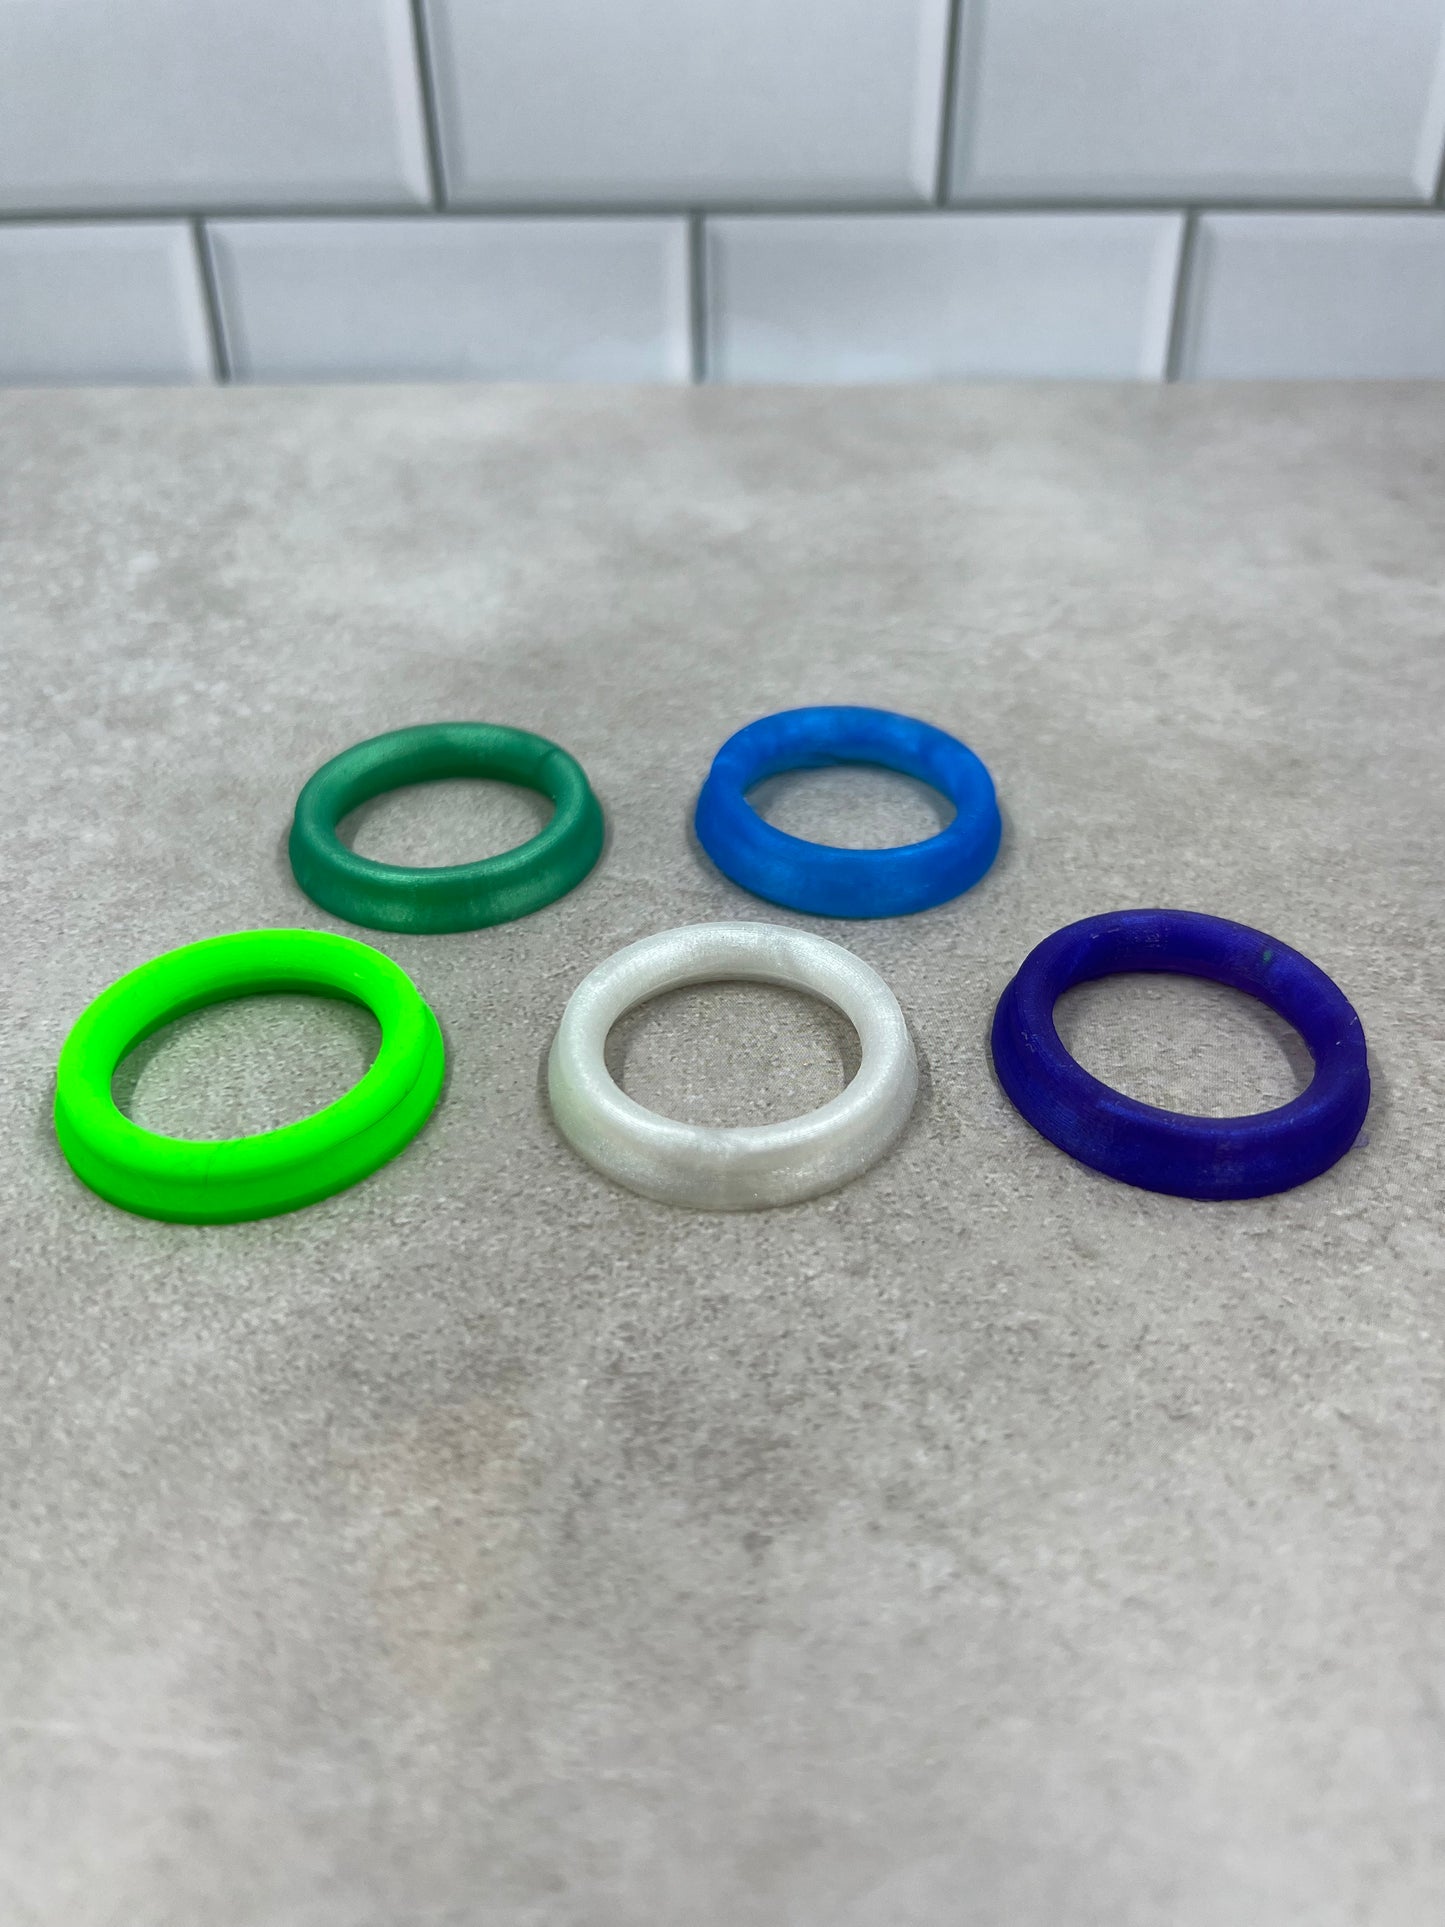 Modular Carb Cap Rings